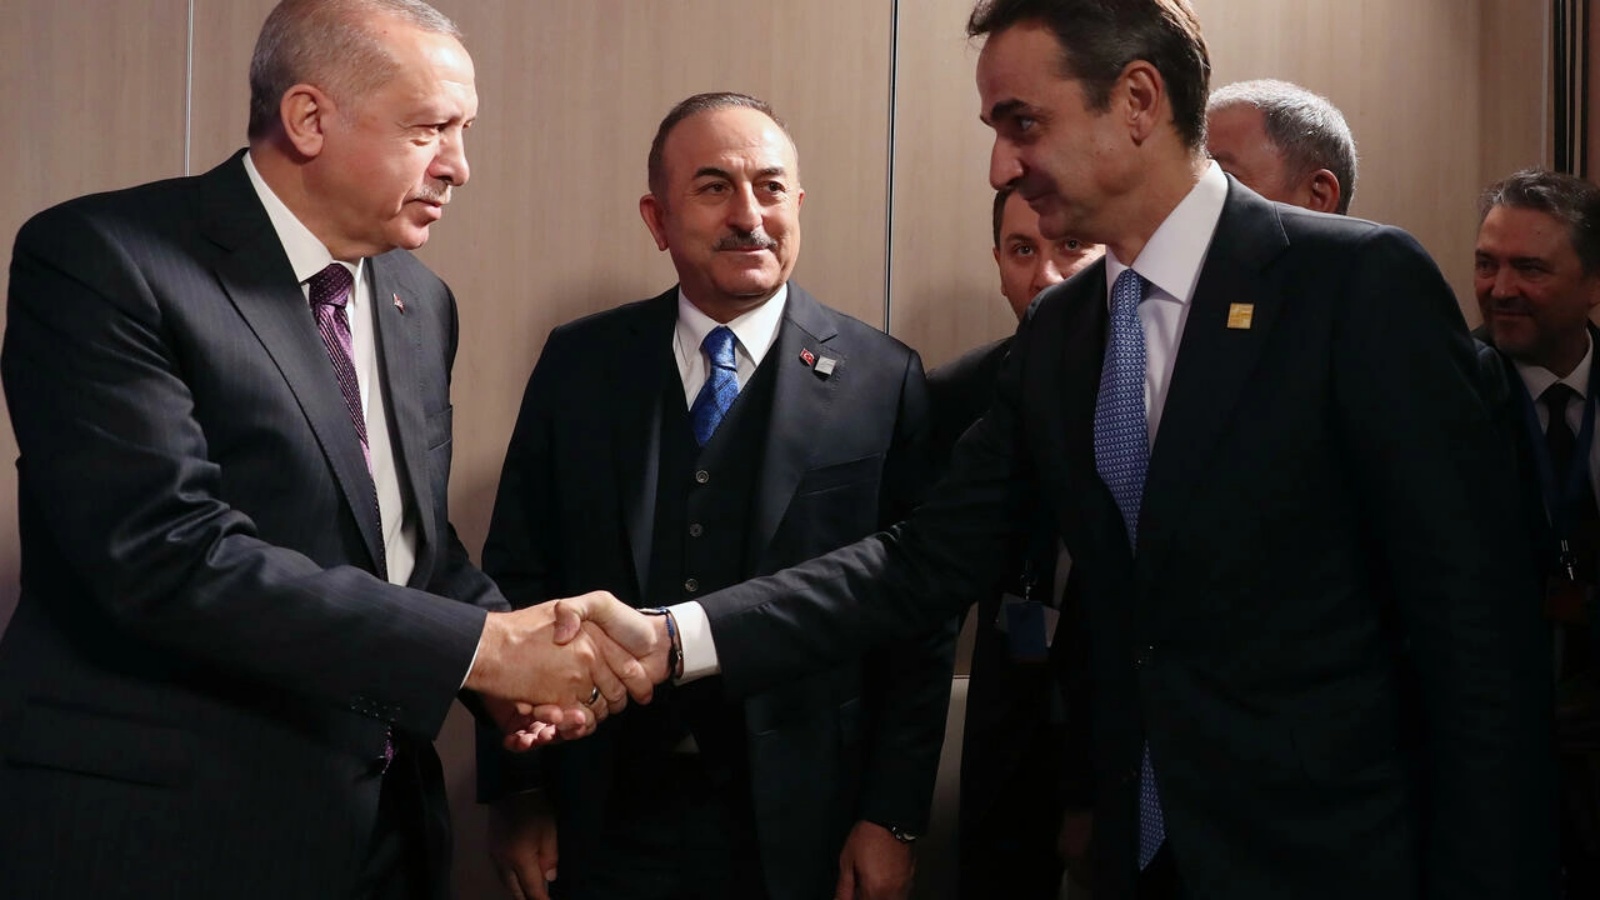 الرئيس التركي رجب طيب إردوغان (يسار) يصافح رئيس الوزراء اليوناني كيرياكوس ميتسوتاكي خلال قمة للحلف الأطلسي في لندن في 4 ديسمبر 2019